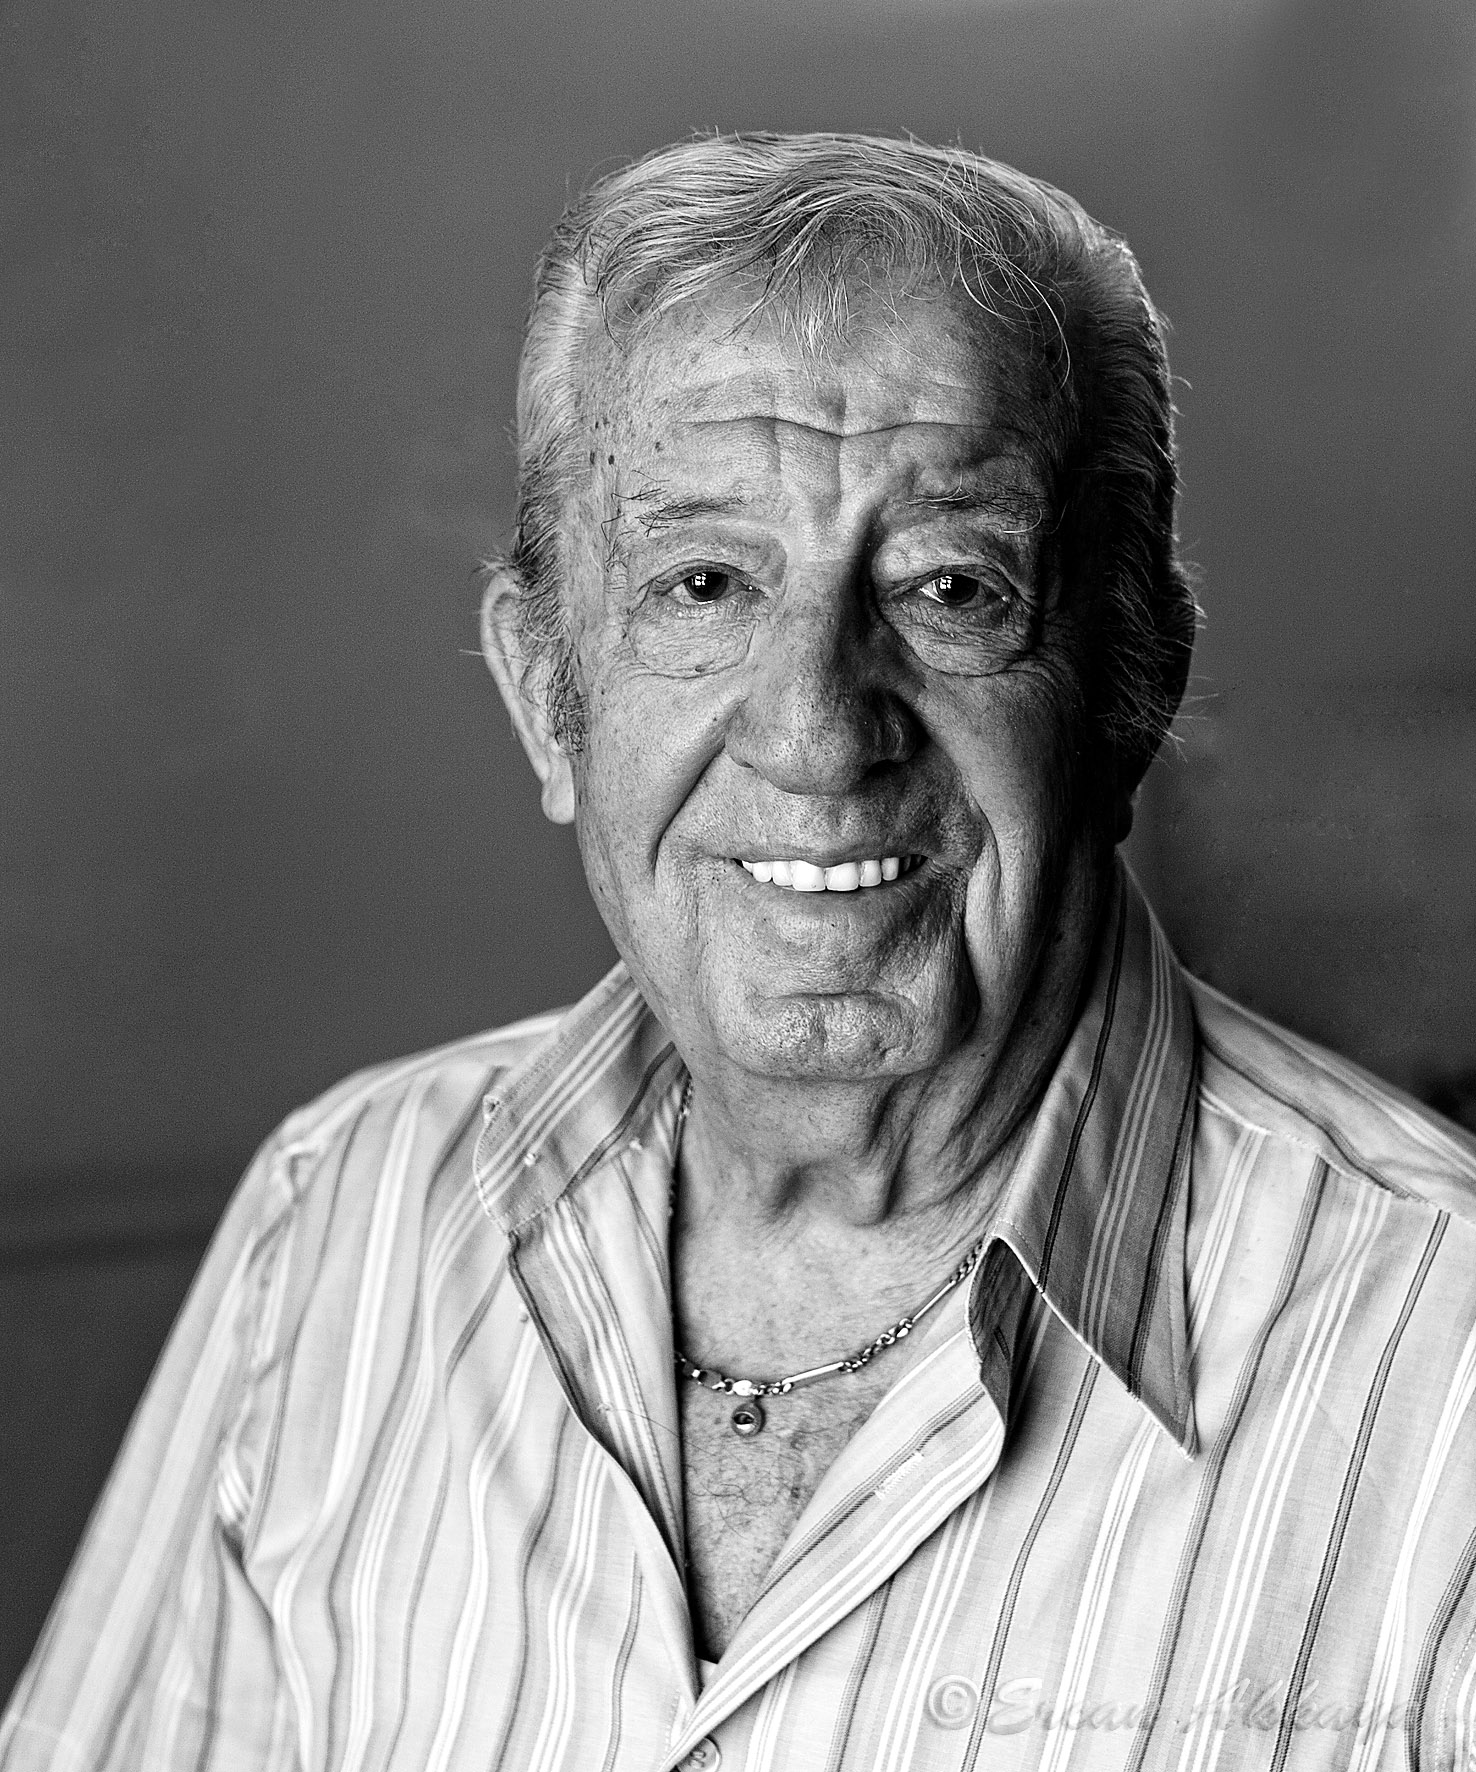 Zafer Onen , 1921 - 2013